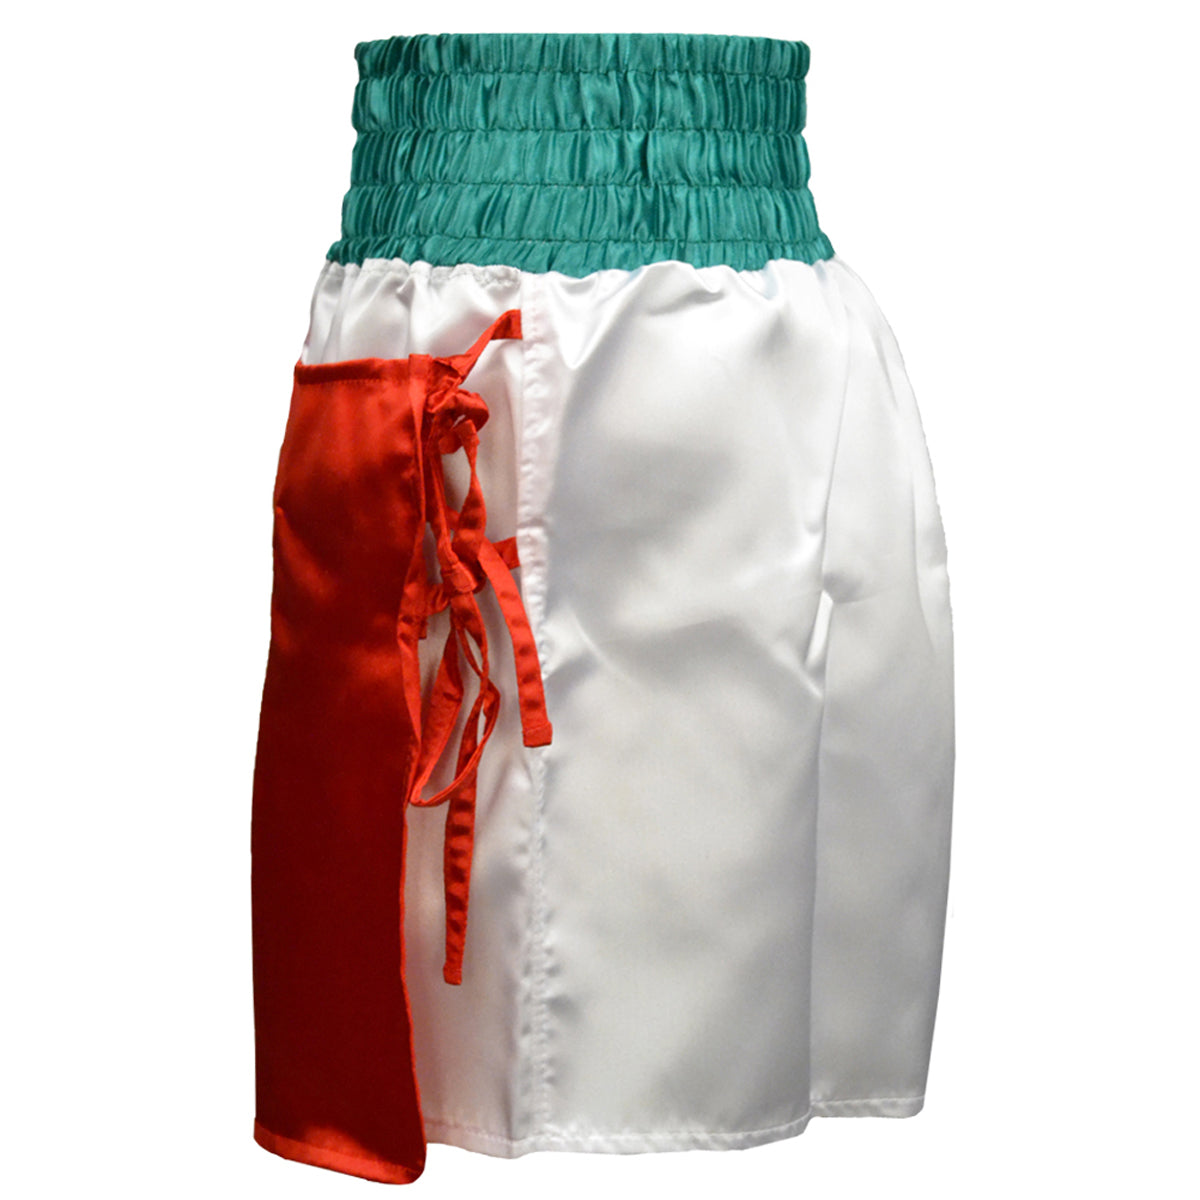 Cleto Reyes Women's Satin Boxing Skirt Trunks Cleto Reyes